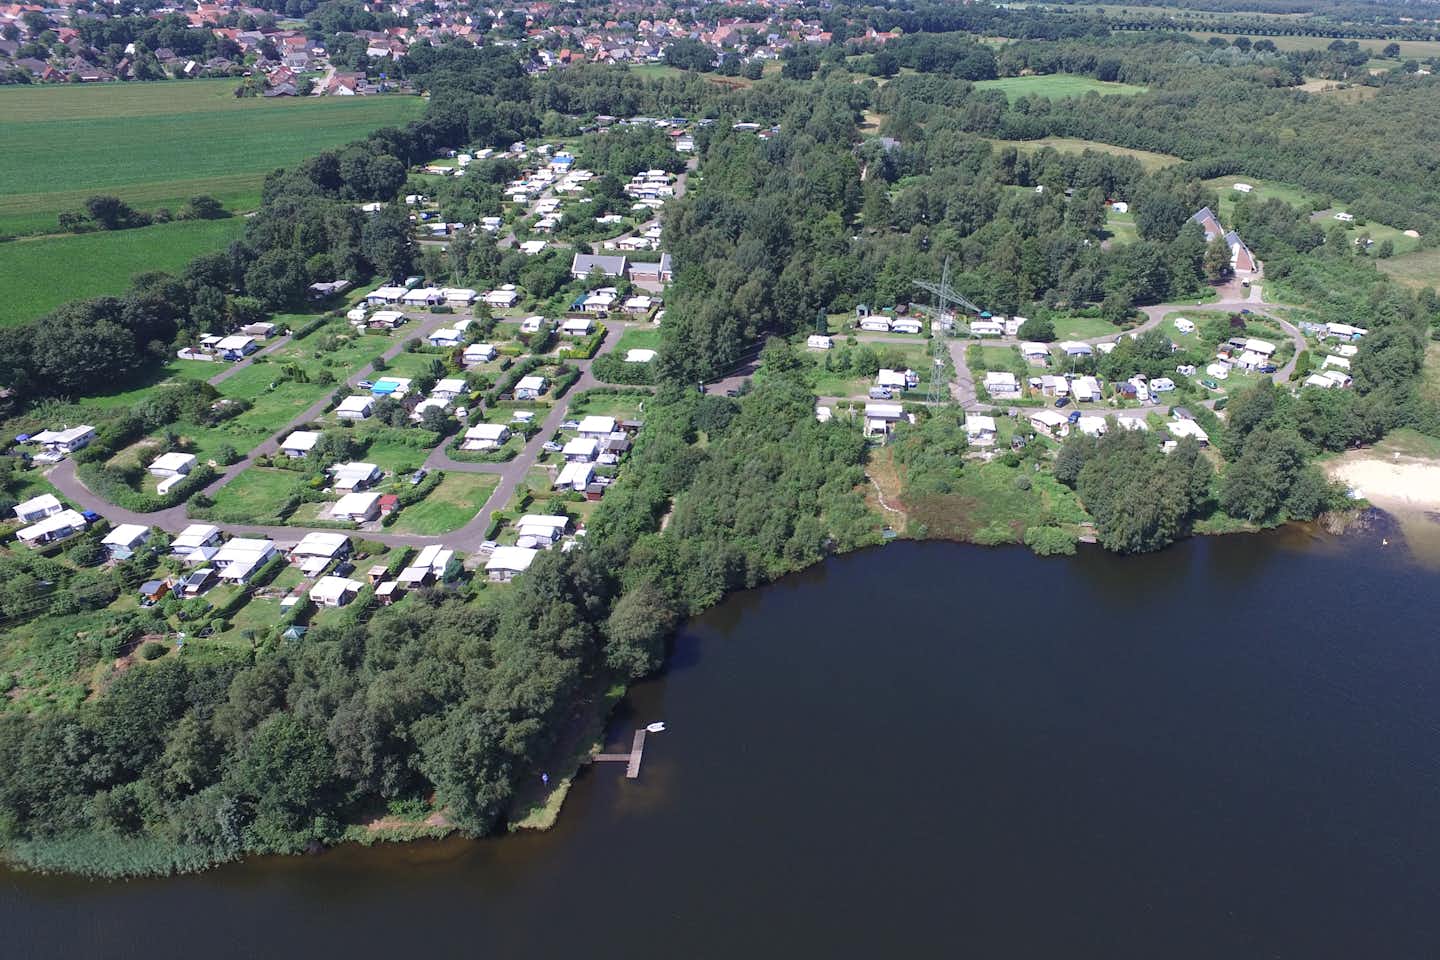 Campingplatz Spadener See - Luftaufnahme auf den Campingplatz und den Spadener See davor